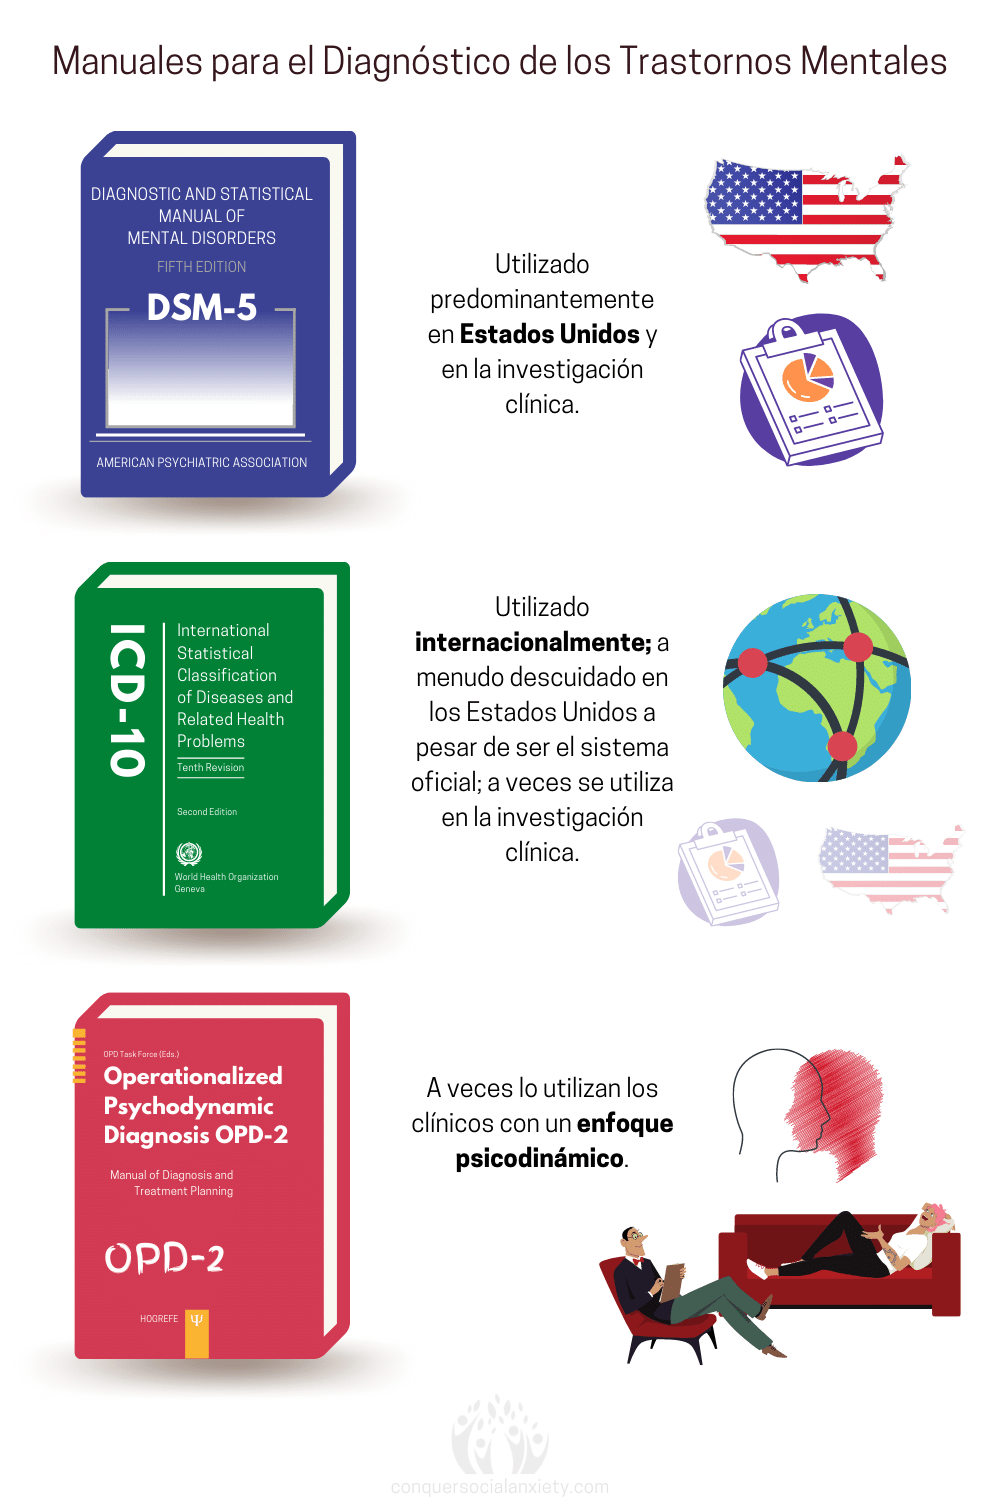 El DSM-5 se utiliza principalmente en Estados Unidos y con fines de investigación. La CIE-10 se utiliza internacionalmente para diagnosticar los trastornos mentales. Los terapeutas psicodinámicos utilizan a veces el OPD-2 para diagnosticar los trastornos psiquiátricos según la teoría psicodinámica.